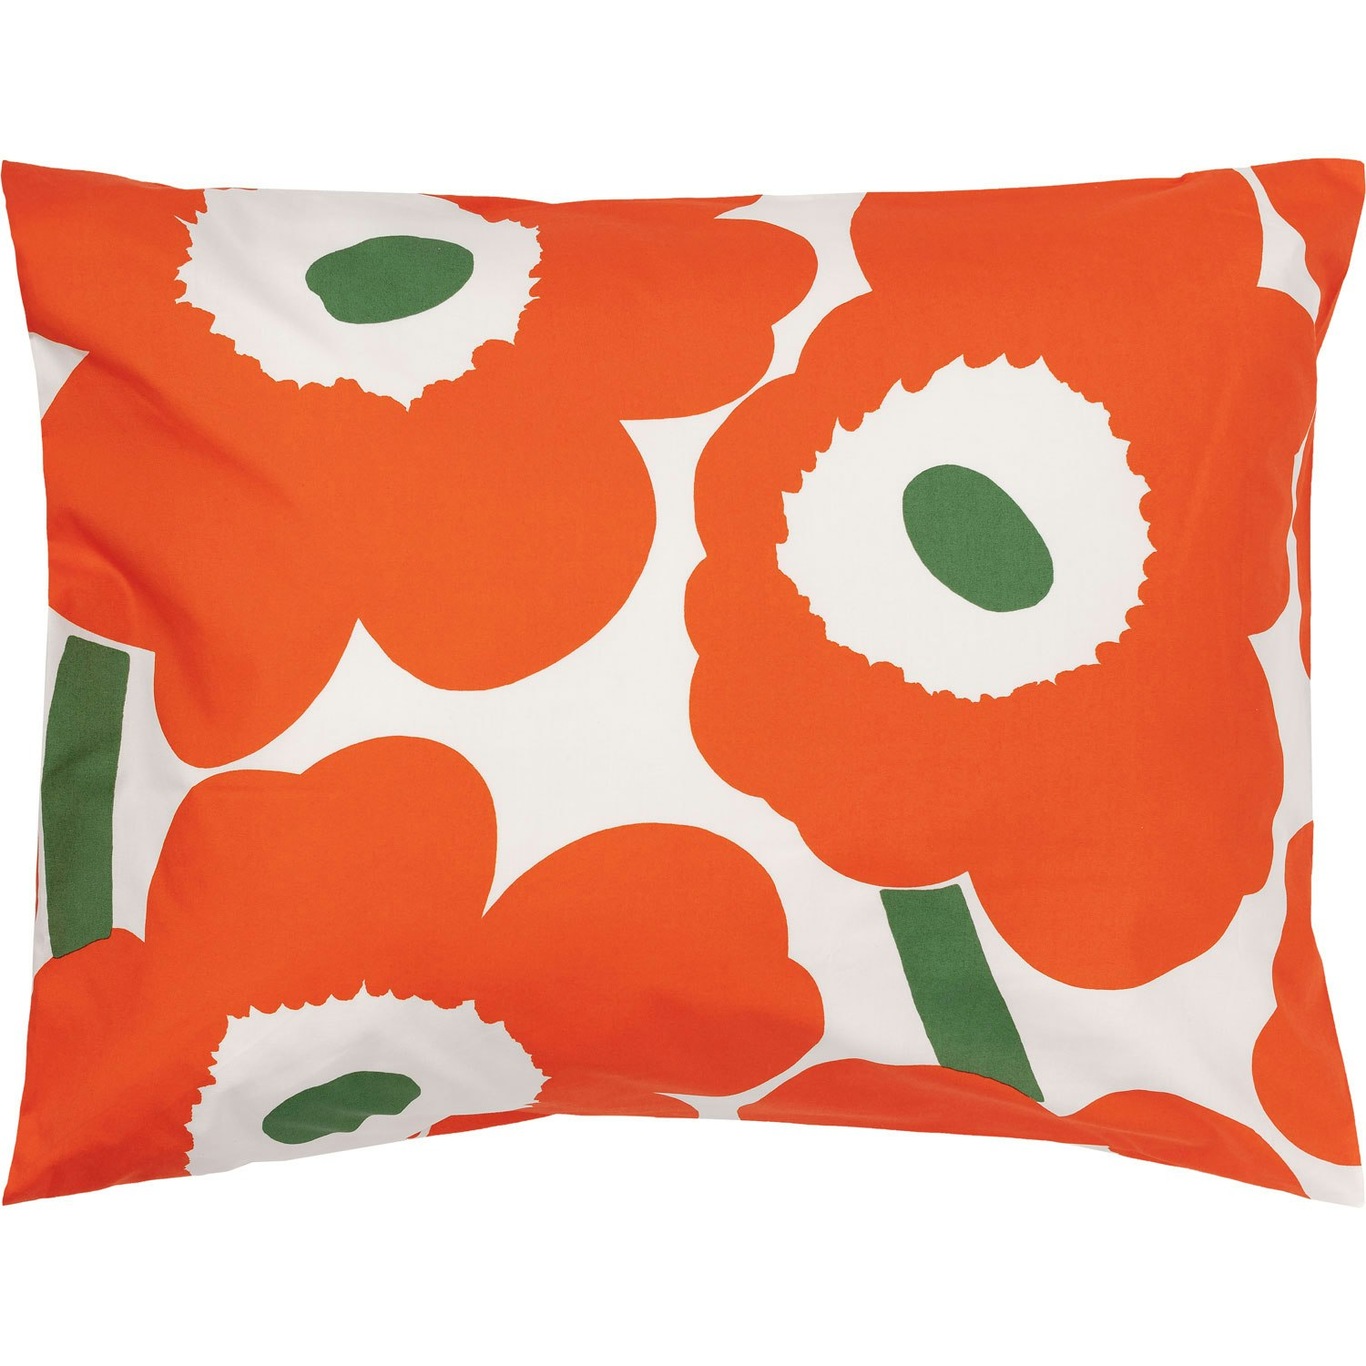 Unikko Pillowcase 50x60 cm, Off-white / Orange / Green